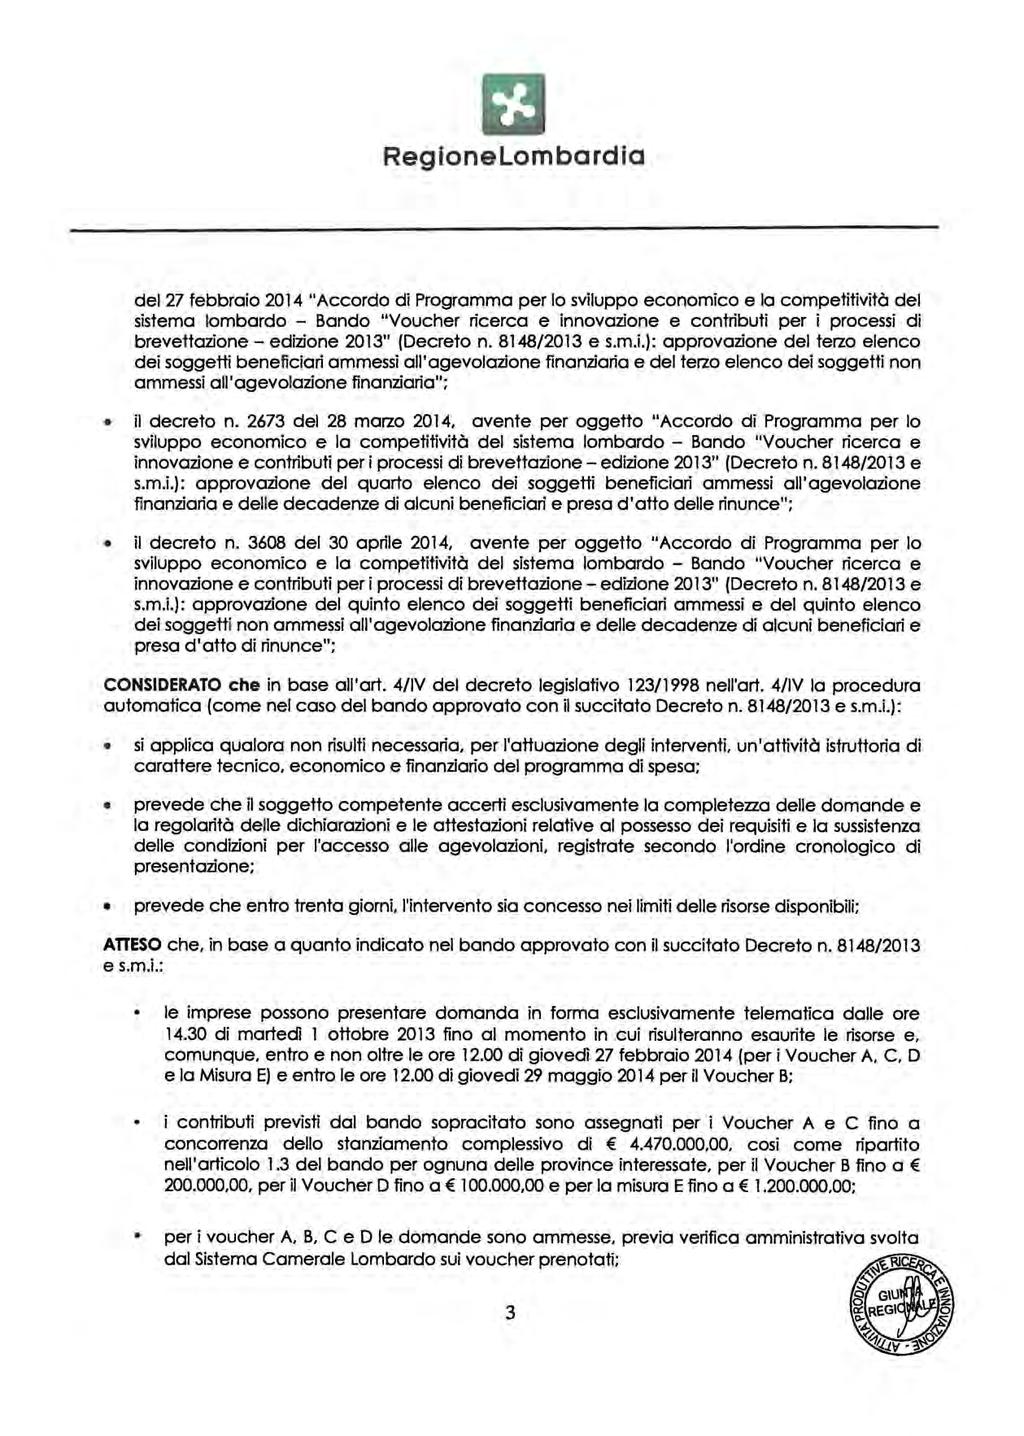 del 27 febbraio 2014 "Accordo di Programma per lo sviluppo economico e la competitività del sistema lombardo - Bando "Voucher ricerca e innovazione e contributi per i processi di brevettazione-